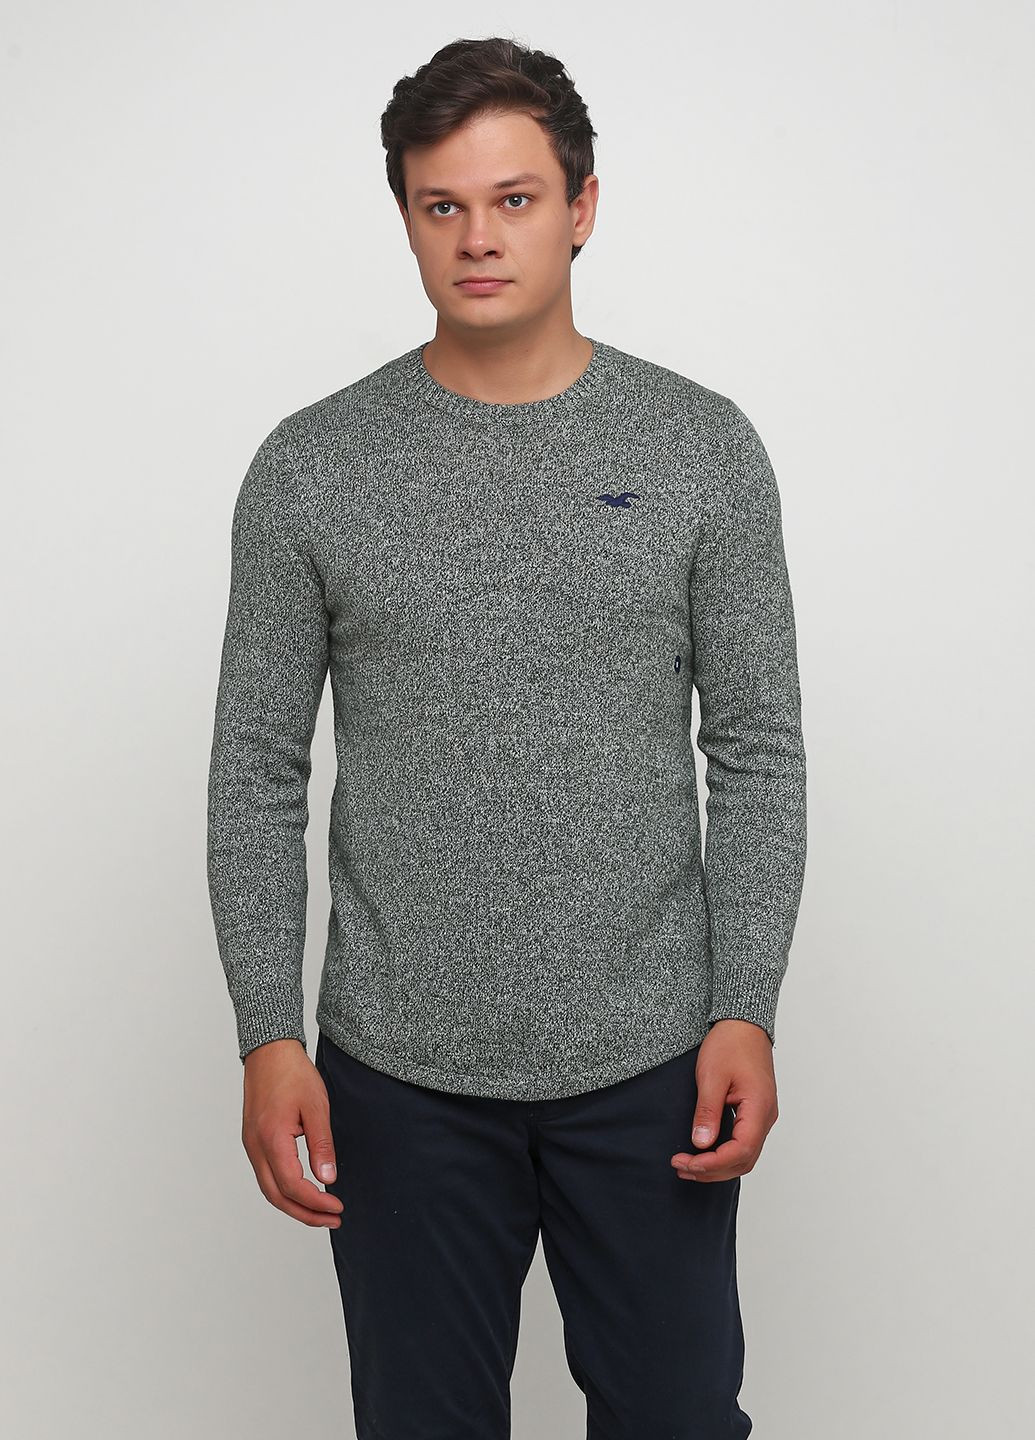 Зеленый демисезонный свитер мужской - свитер hc6890m Hollister